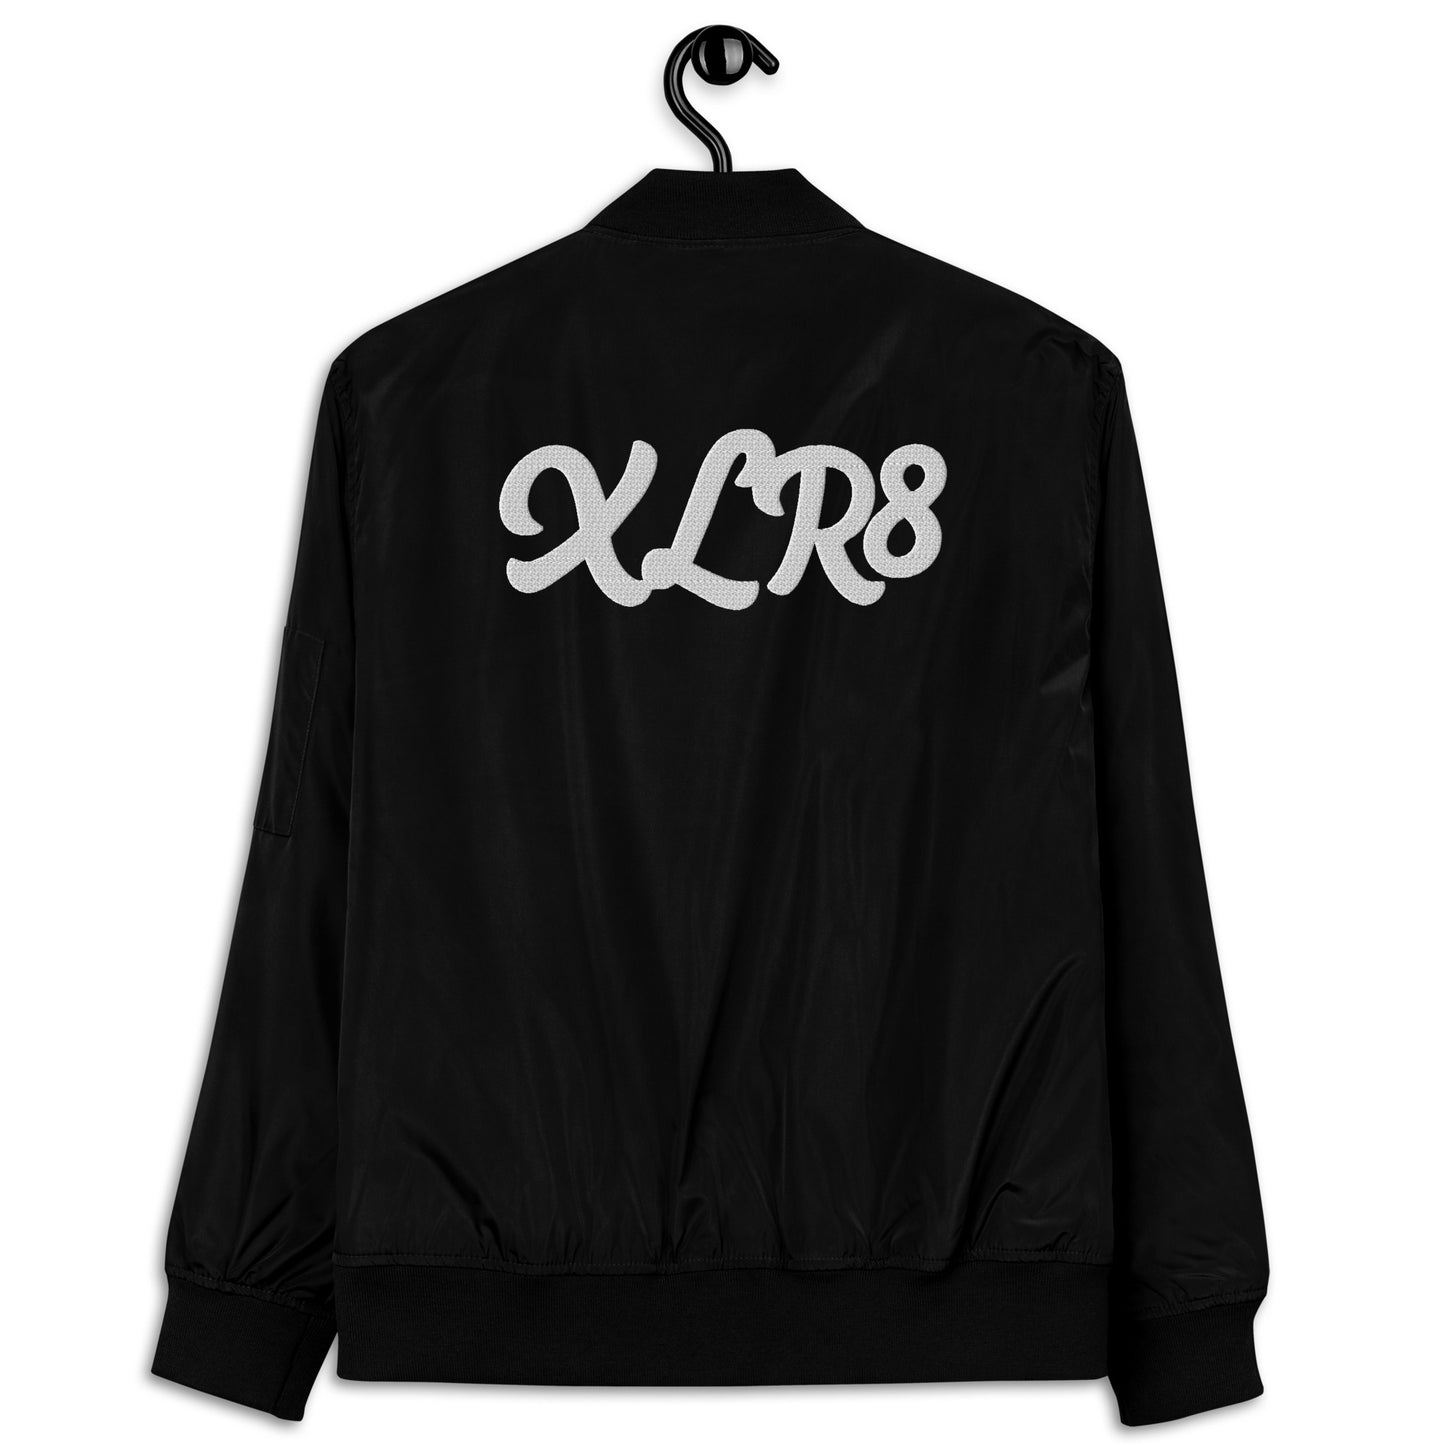 XLR8 bomber jacket